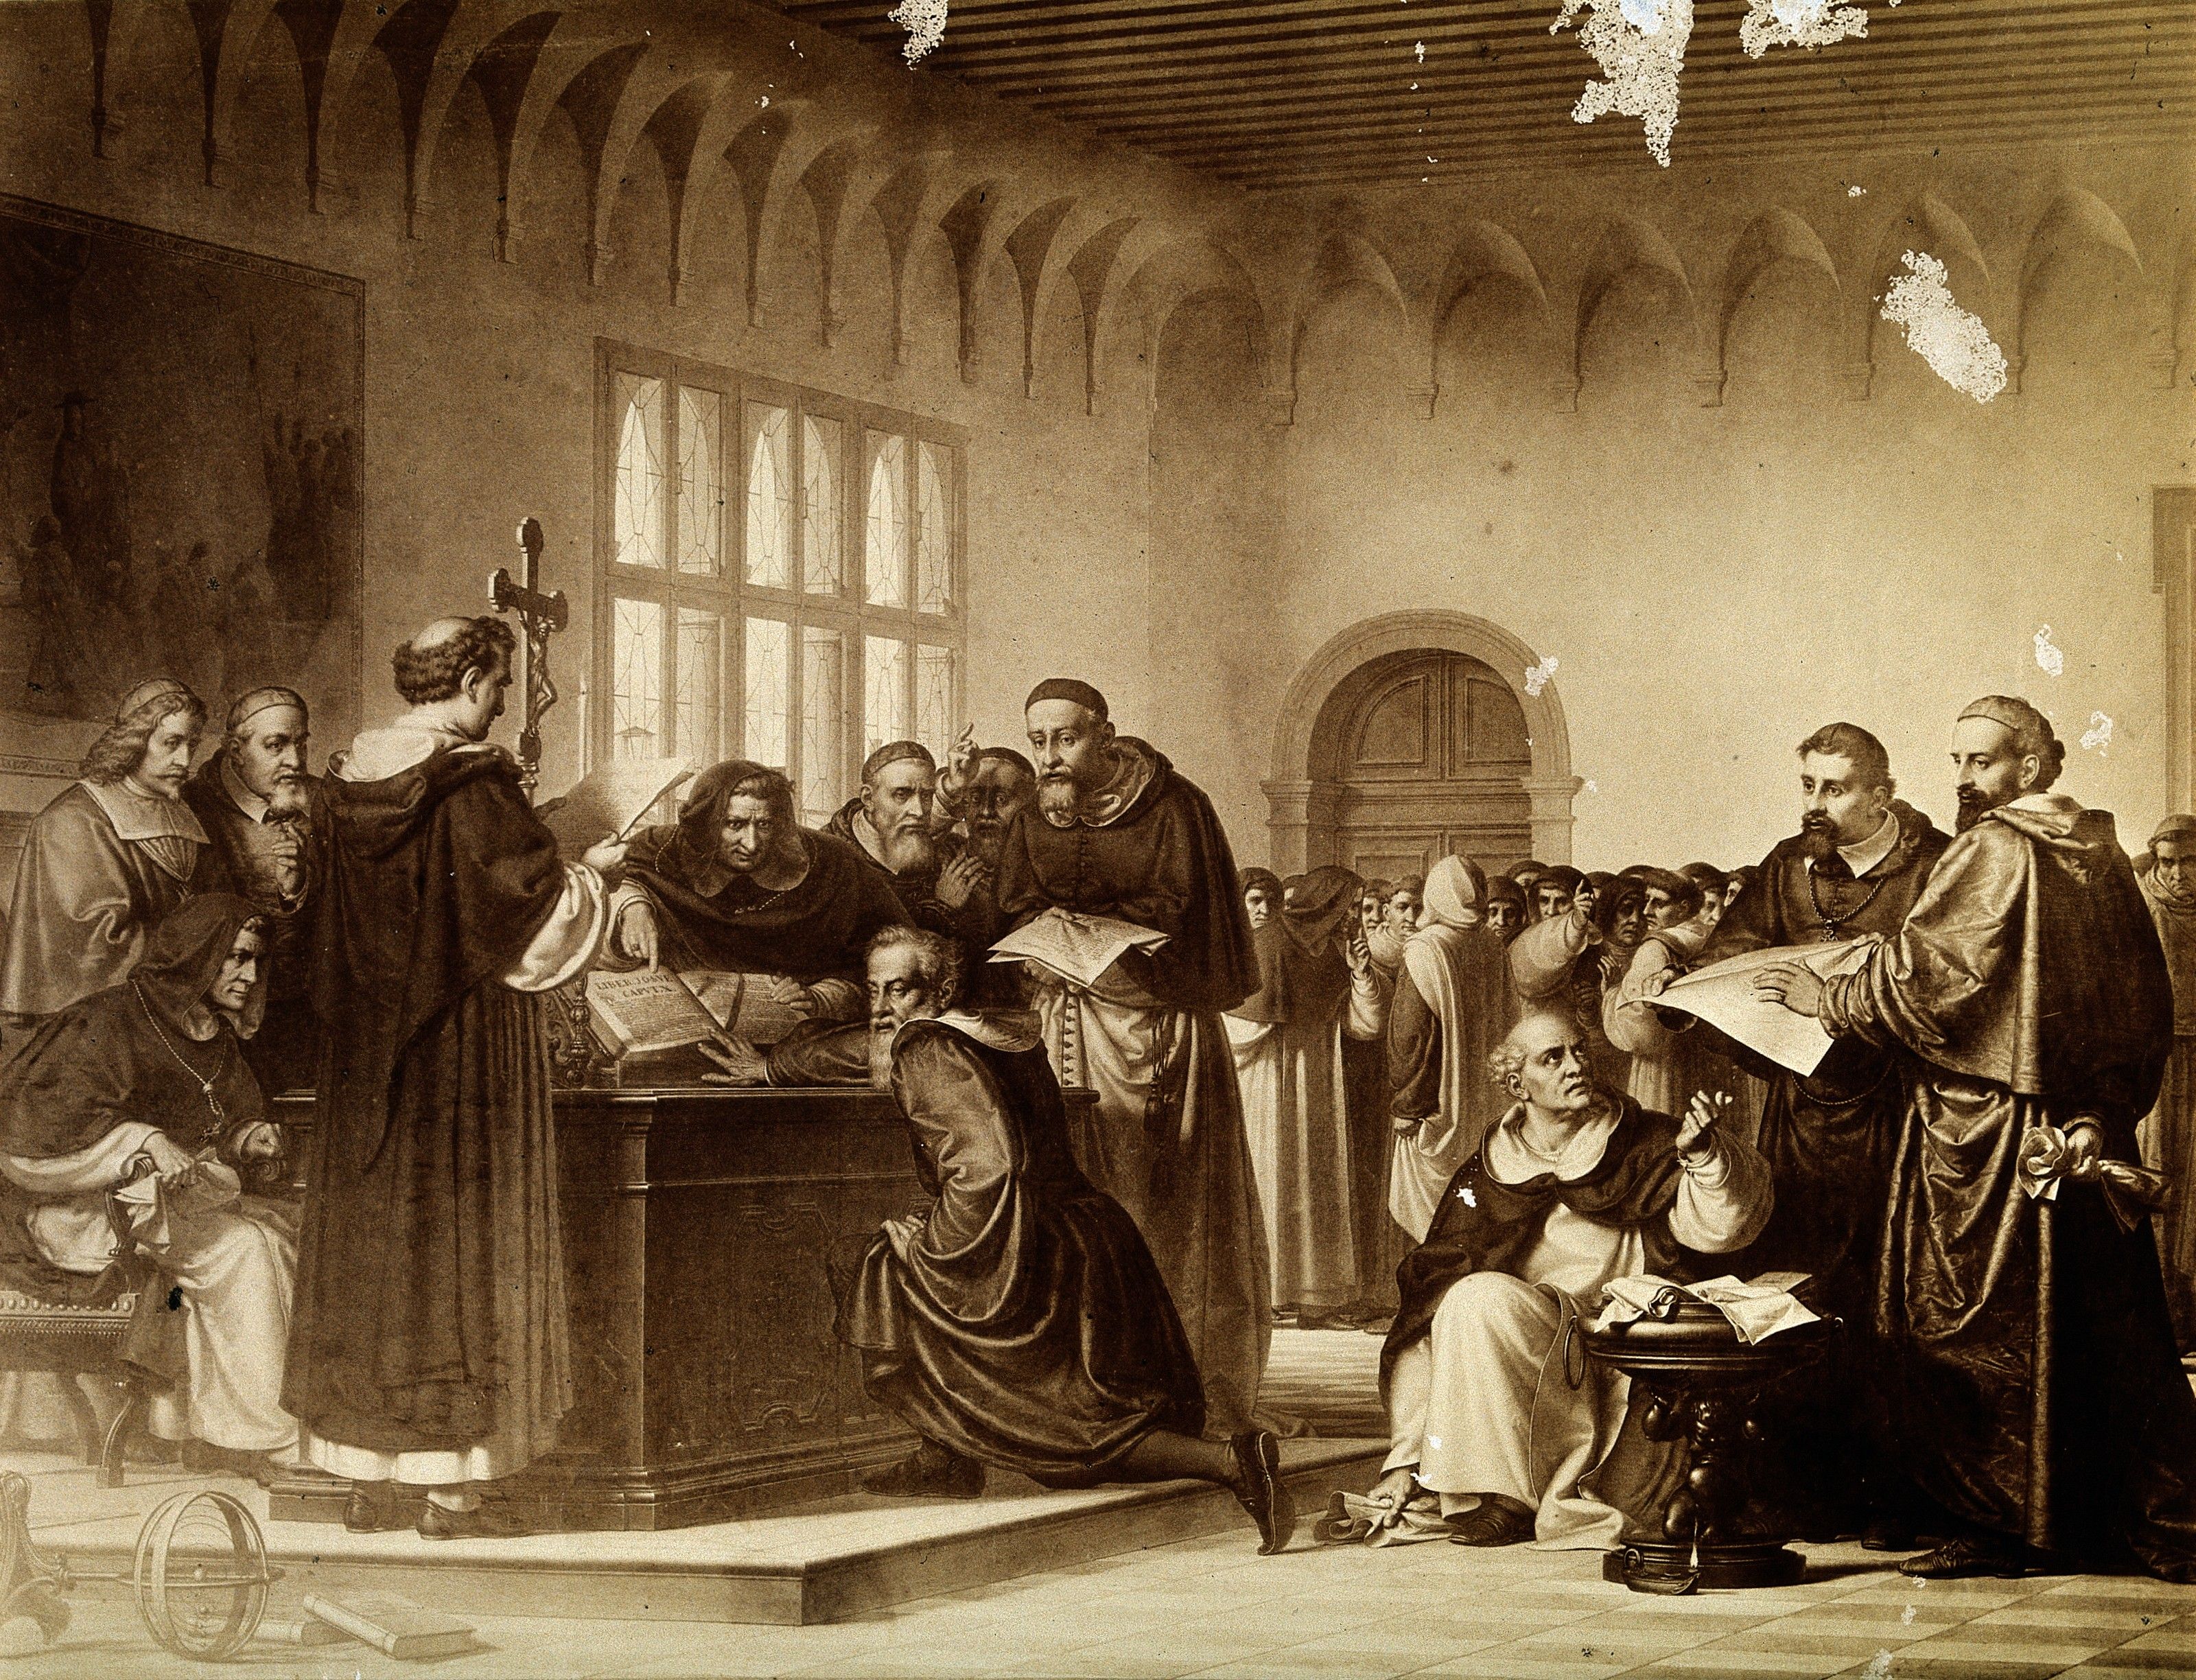 Galileu, jutjat per la Santa Inquisició